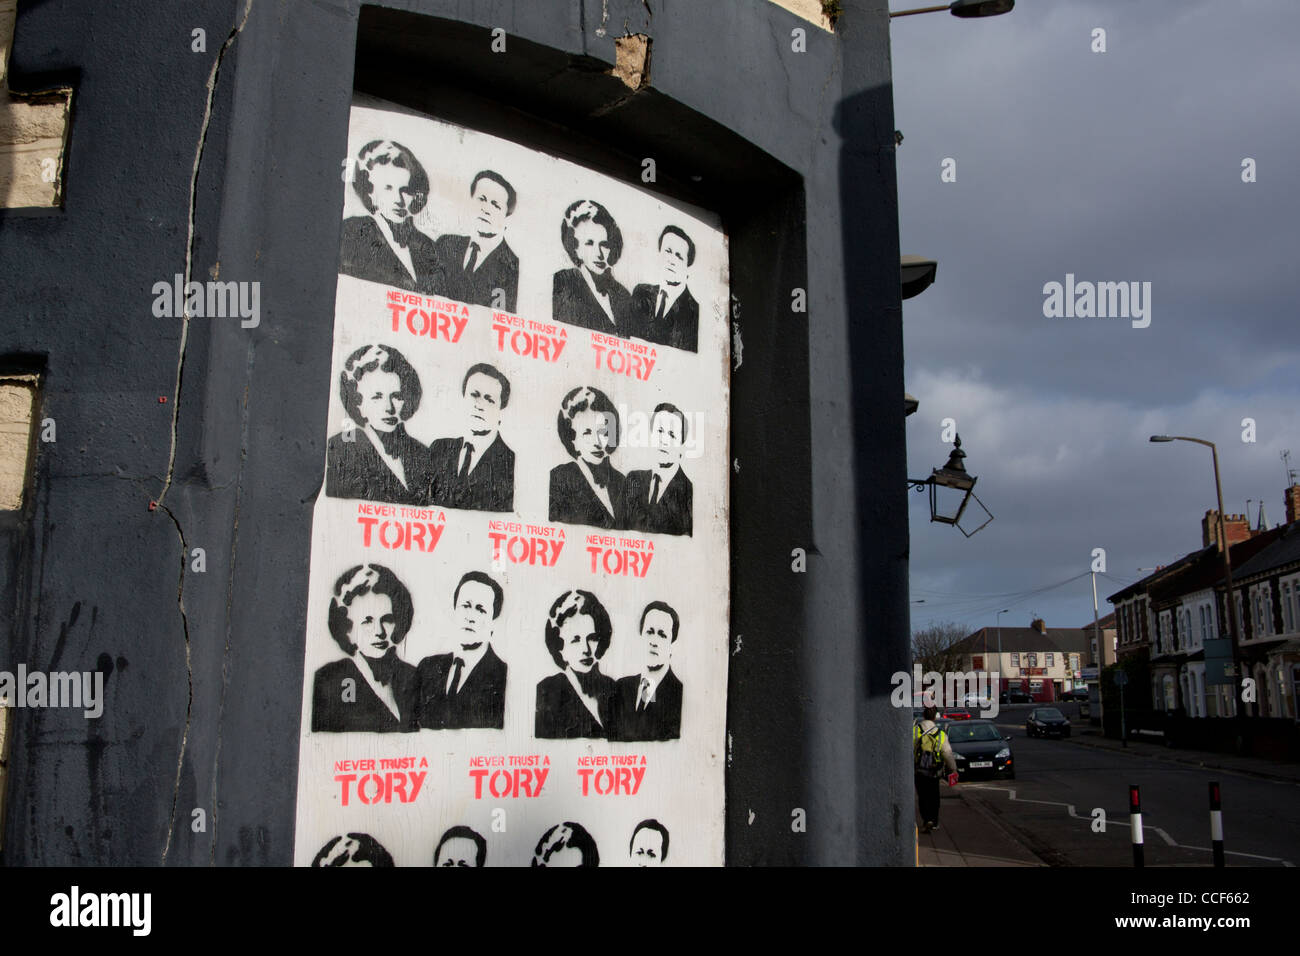 "Traue niemals einen Tory" Schablone Plakatkunst mit Premierminister Thatcher und Cameron auf vernagelten heruntergekommenen Pub Cardiff Wales UK Stockfoto